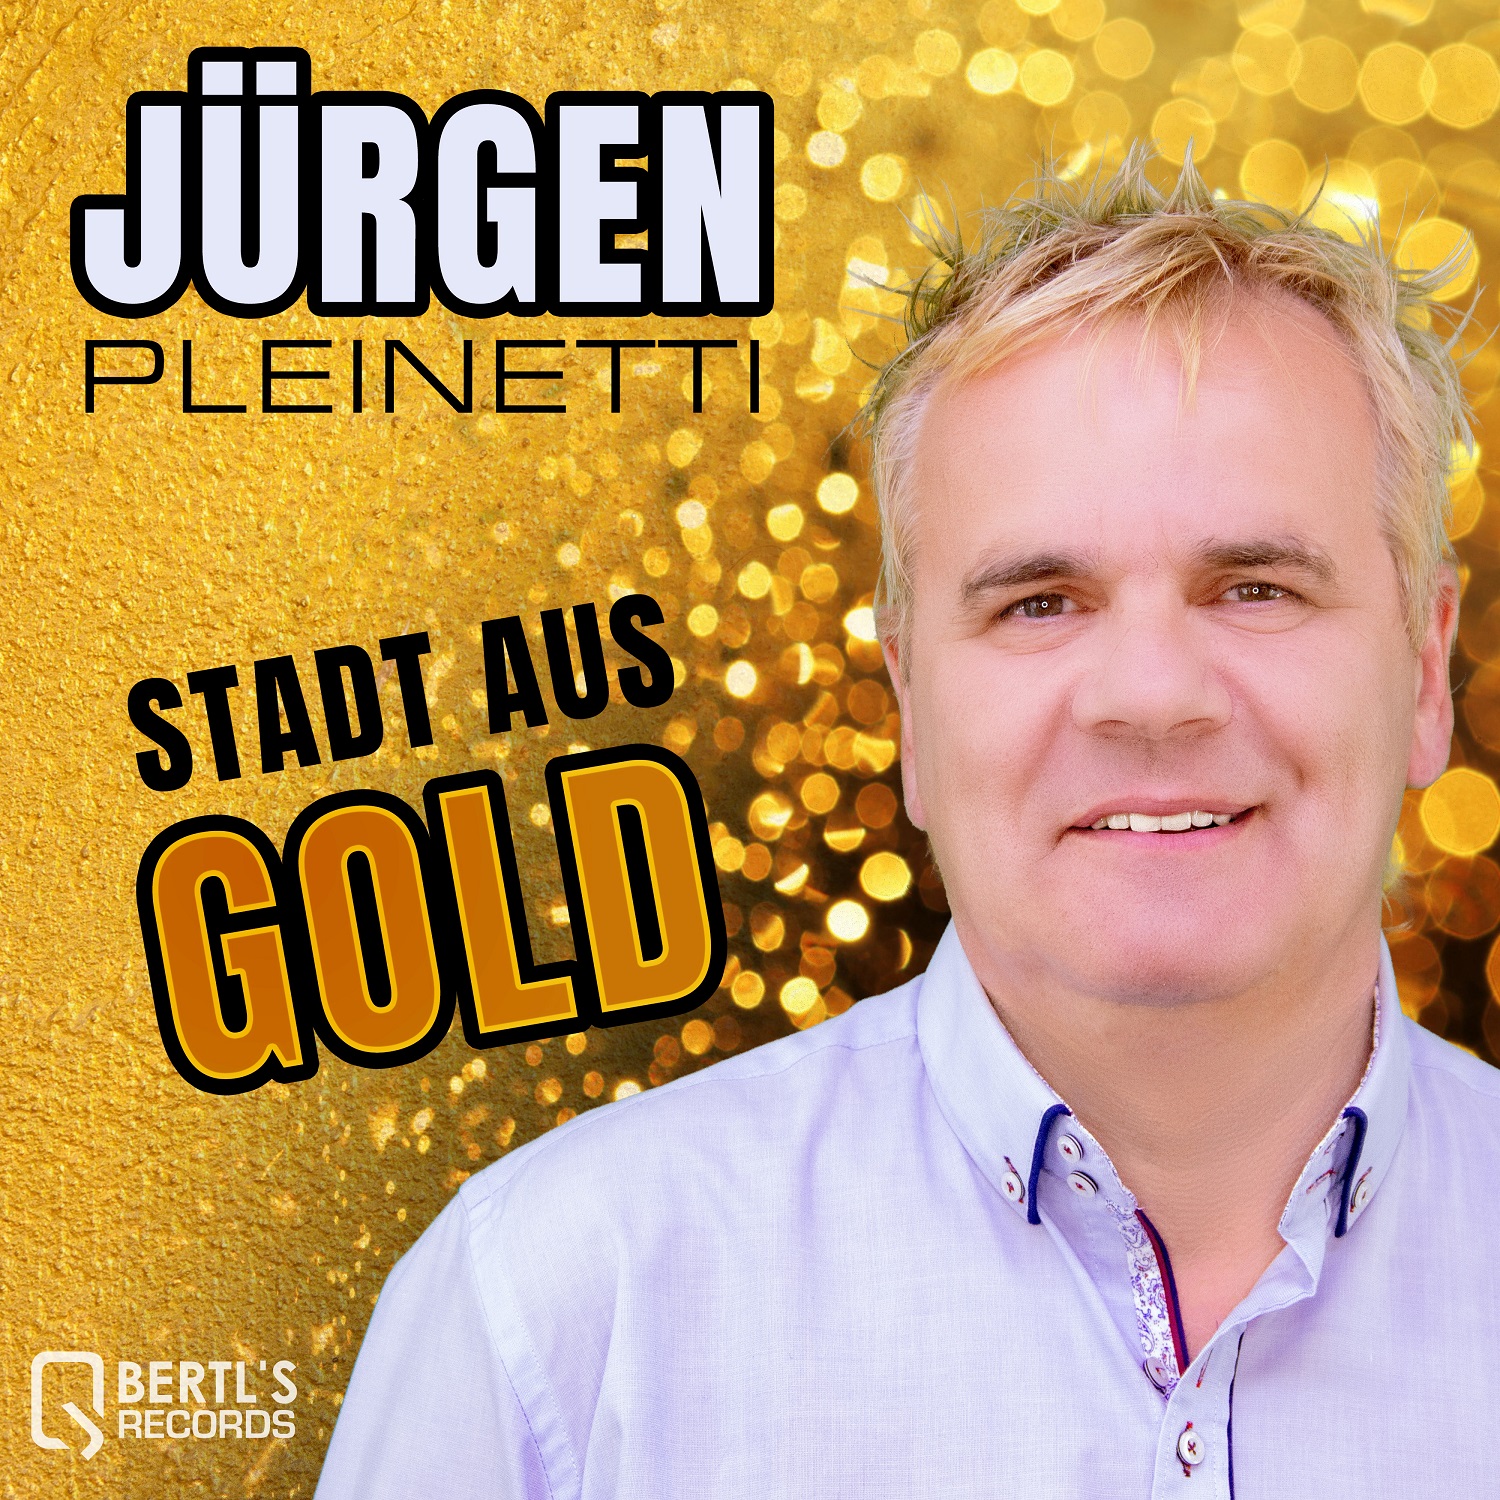 Jrgen Pleinetti - Stadt aus Gold - Cover3500px.jpg